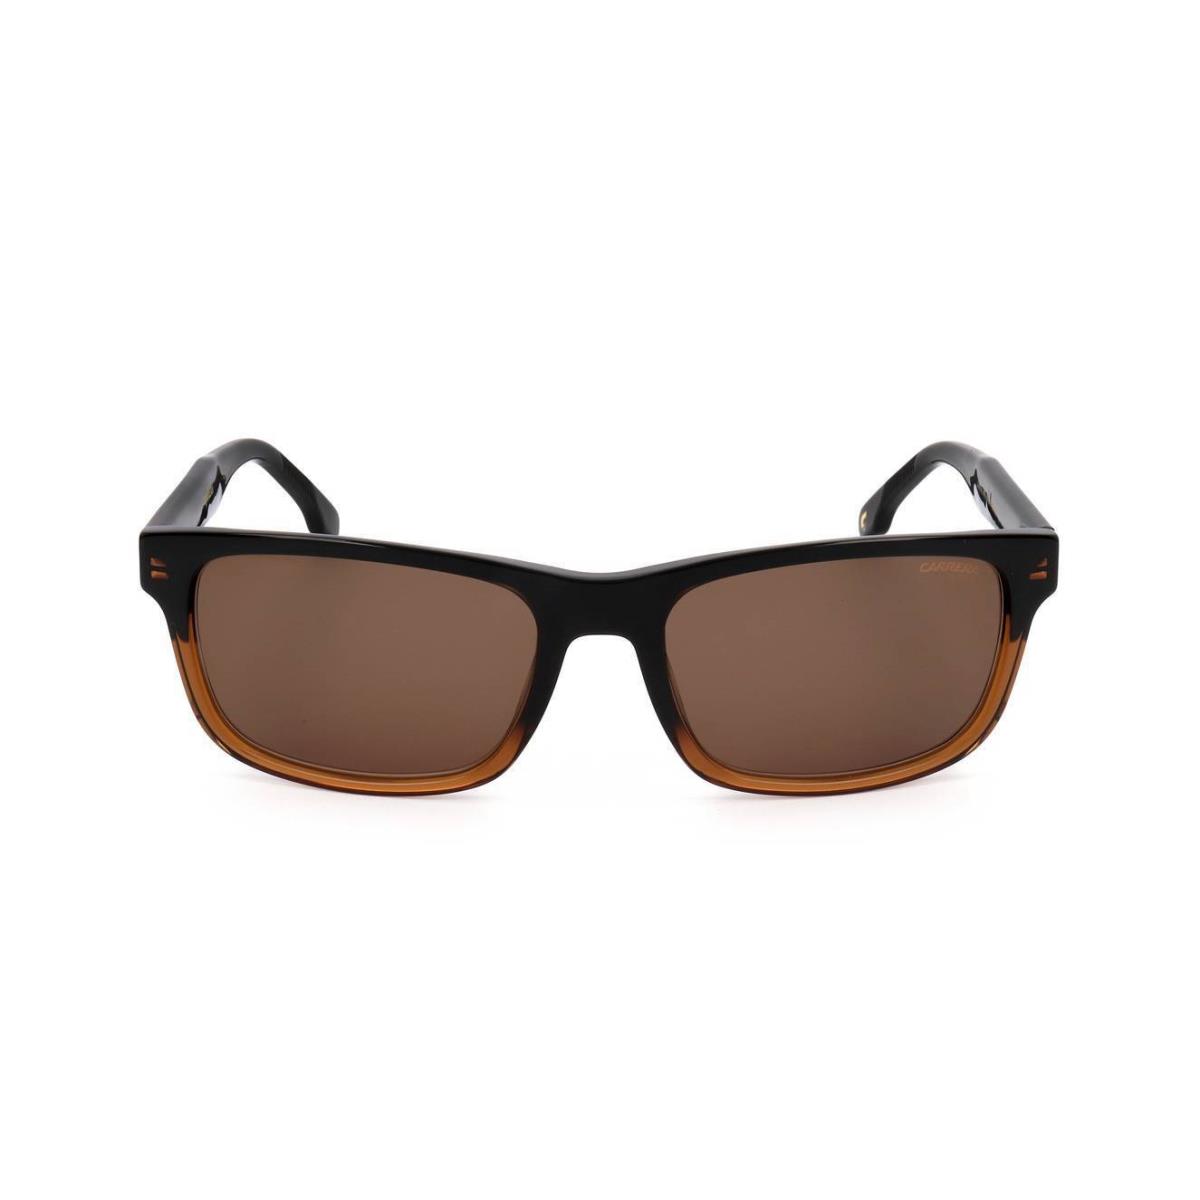 Sunglasses Carrera Carrera 299/S Black Brown Size 57